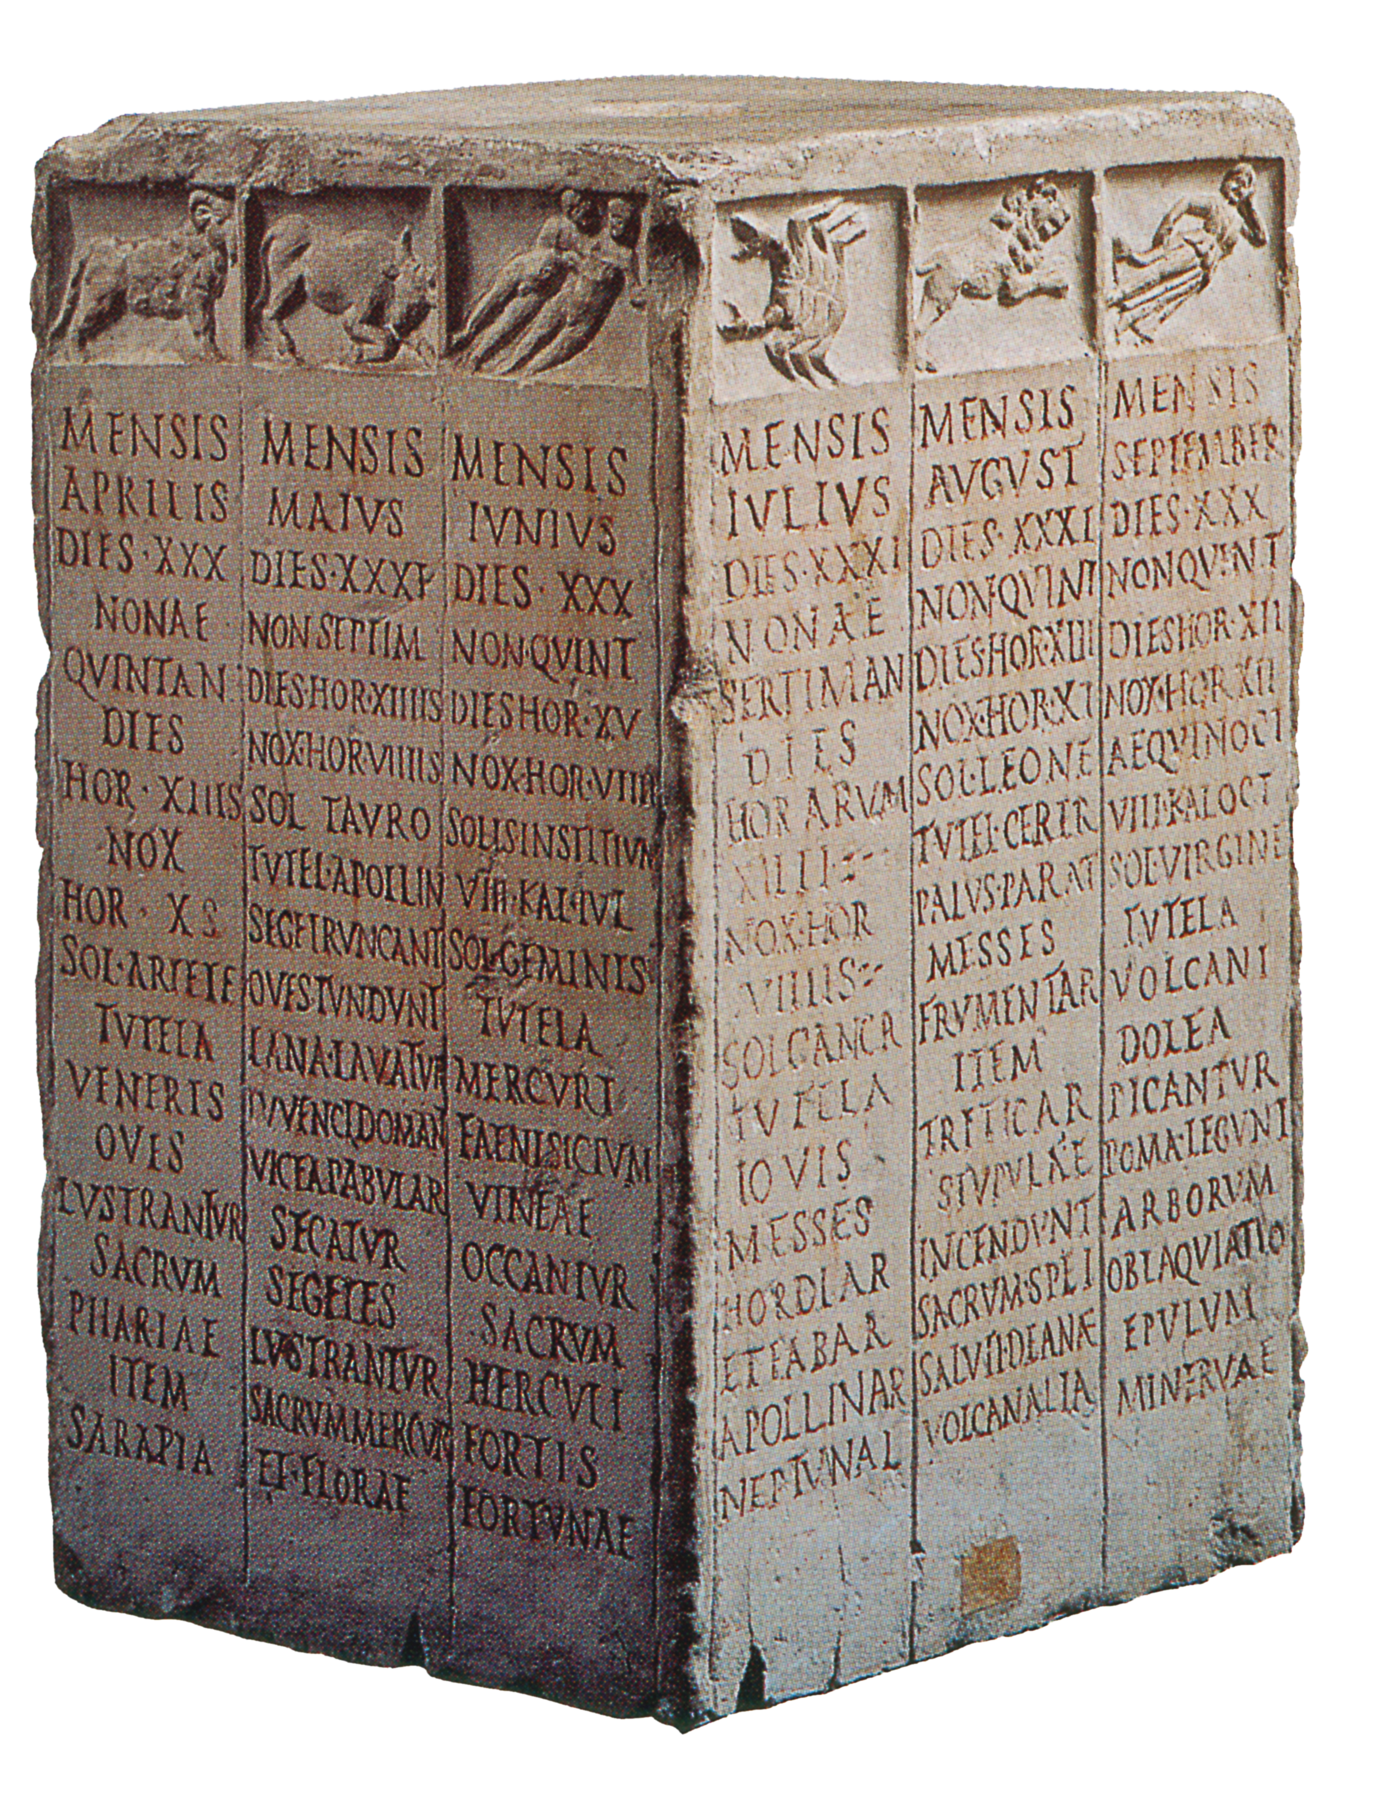 Fotografia. Bloco retangular de pedra visto de lado. Cada uma das laterais apresenta desenhos na parte superior e inscrições no restante da superfície.